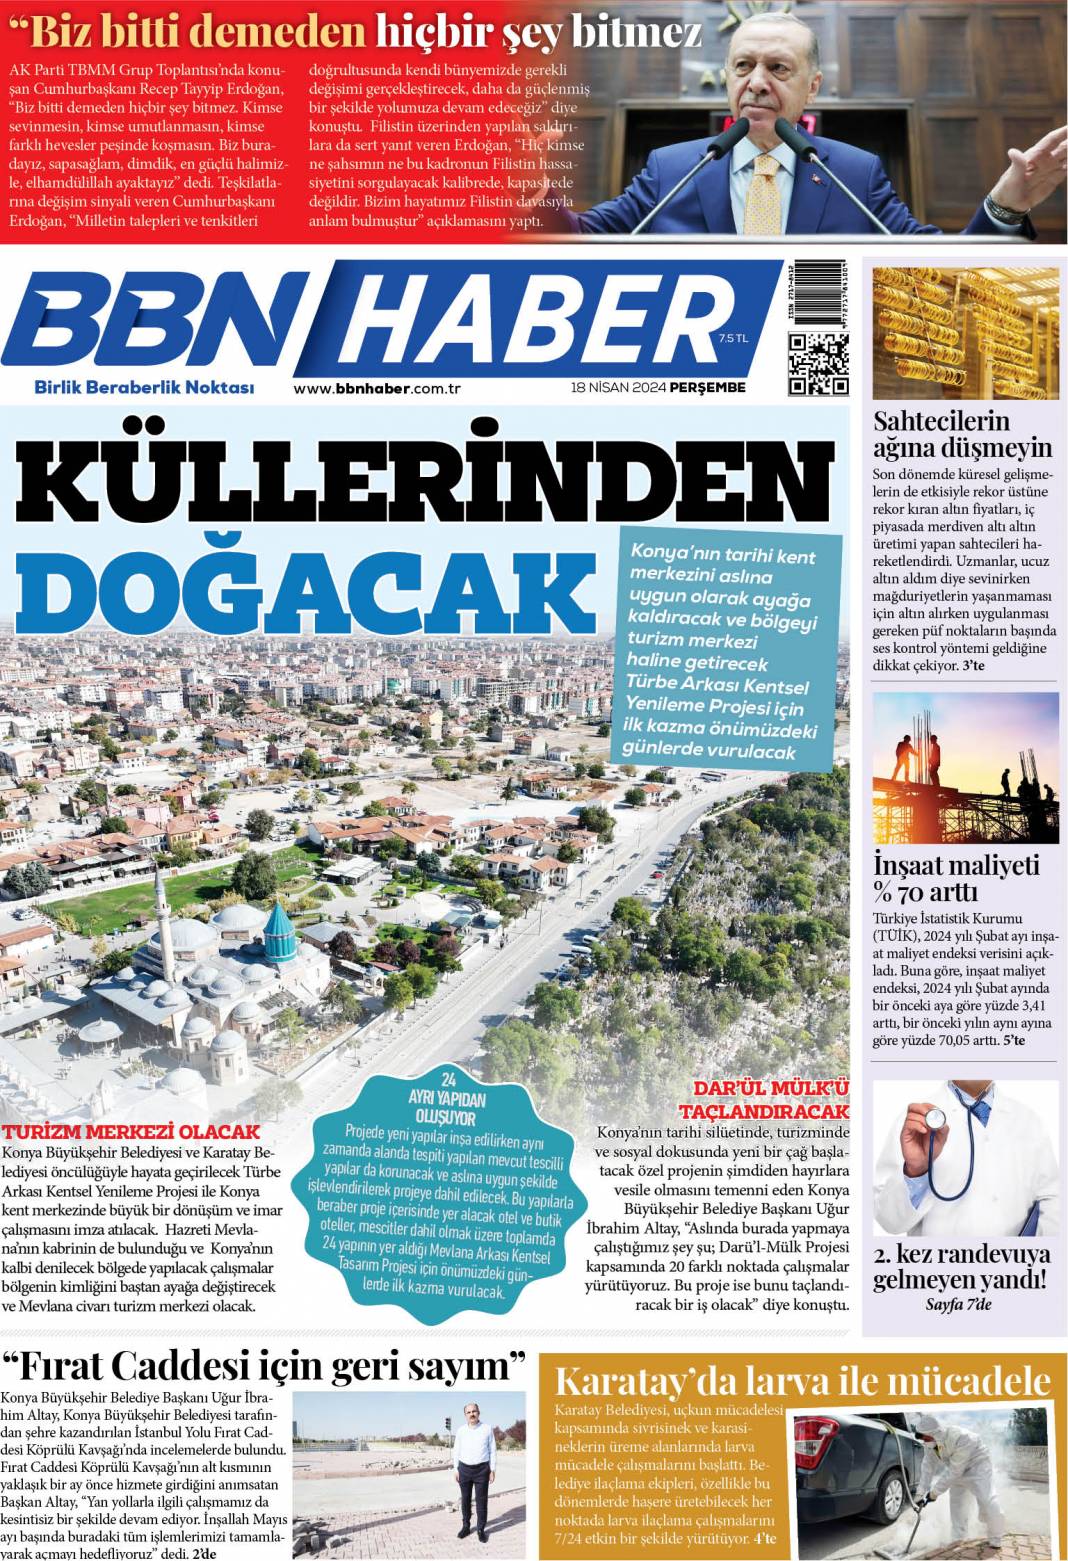 E-Gazete (BBN Haber) 1